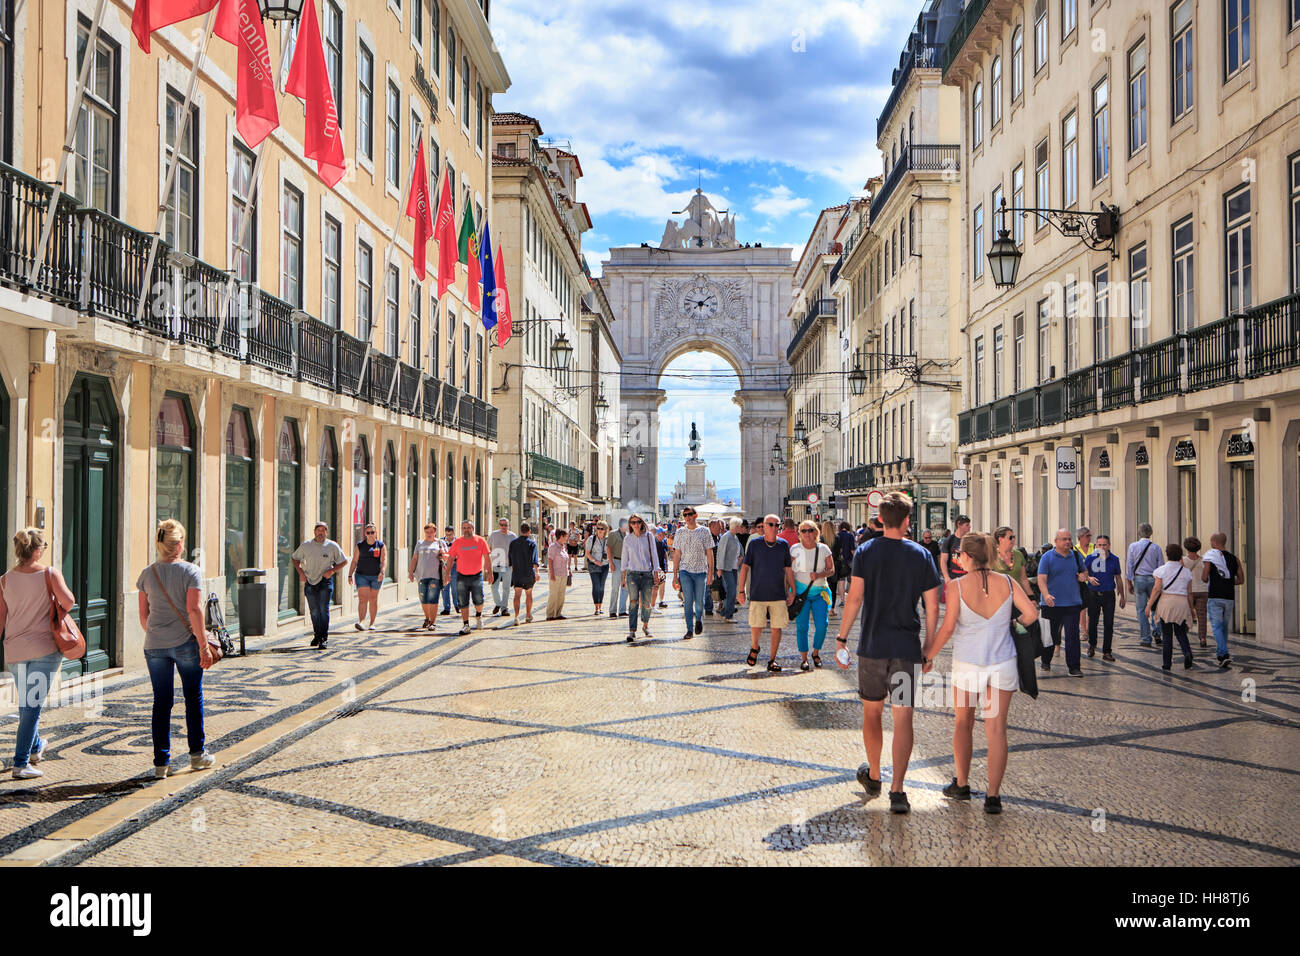 LISBON, PORTUGAL - CIRCA OCTOBER, 2016:  Arco da Rua Augusta of Lisbon town, Portugal. Stock Photo